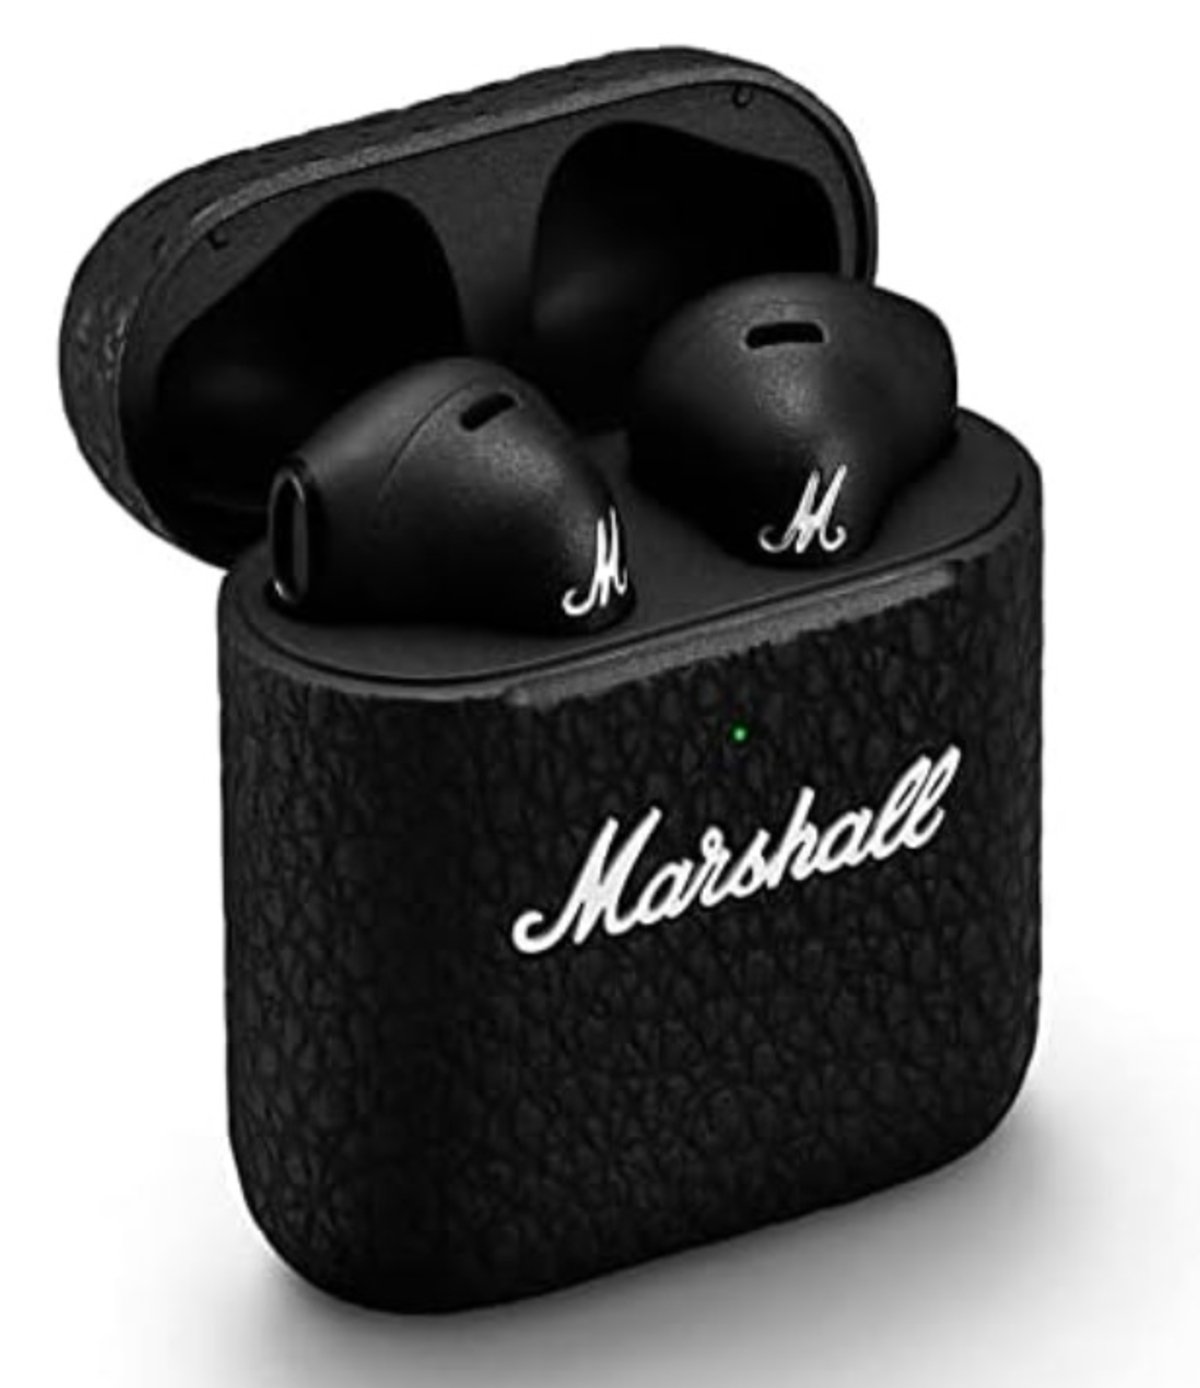 Las mejores ofertas en Marshall auriculares con aislamiento de ruido